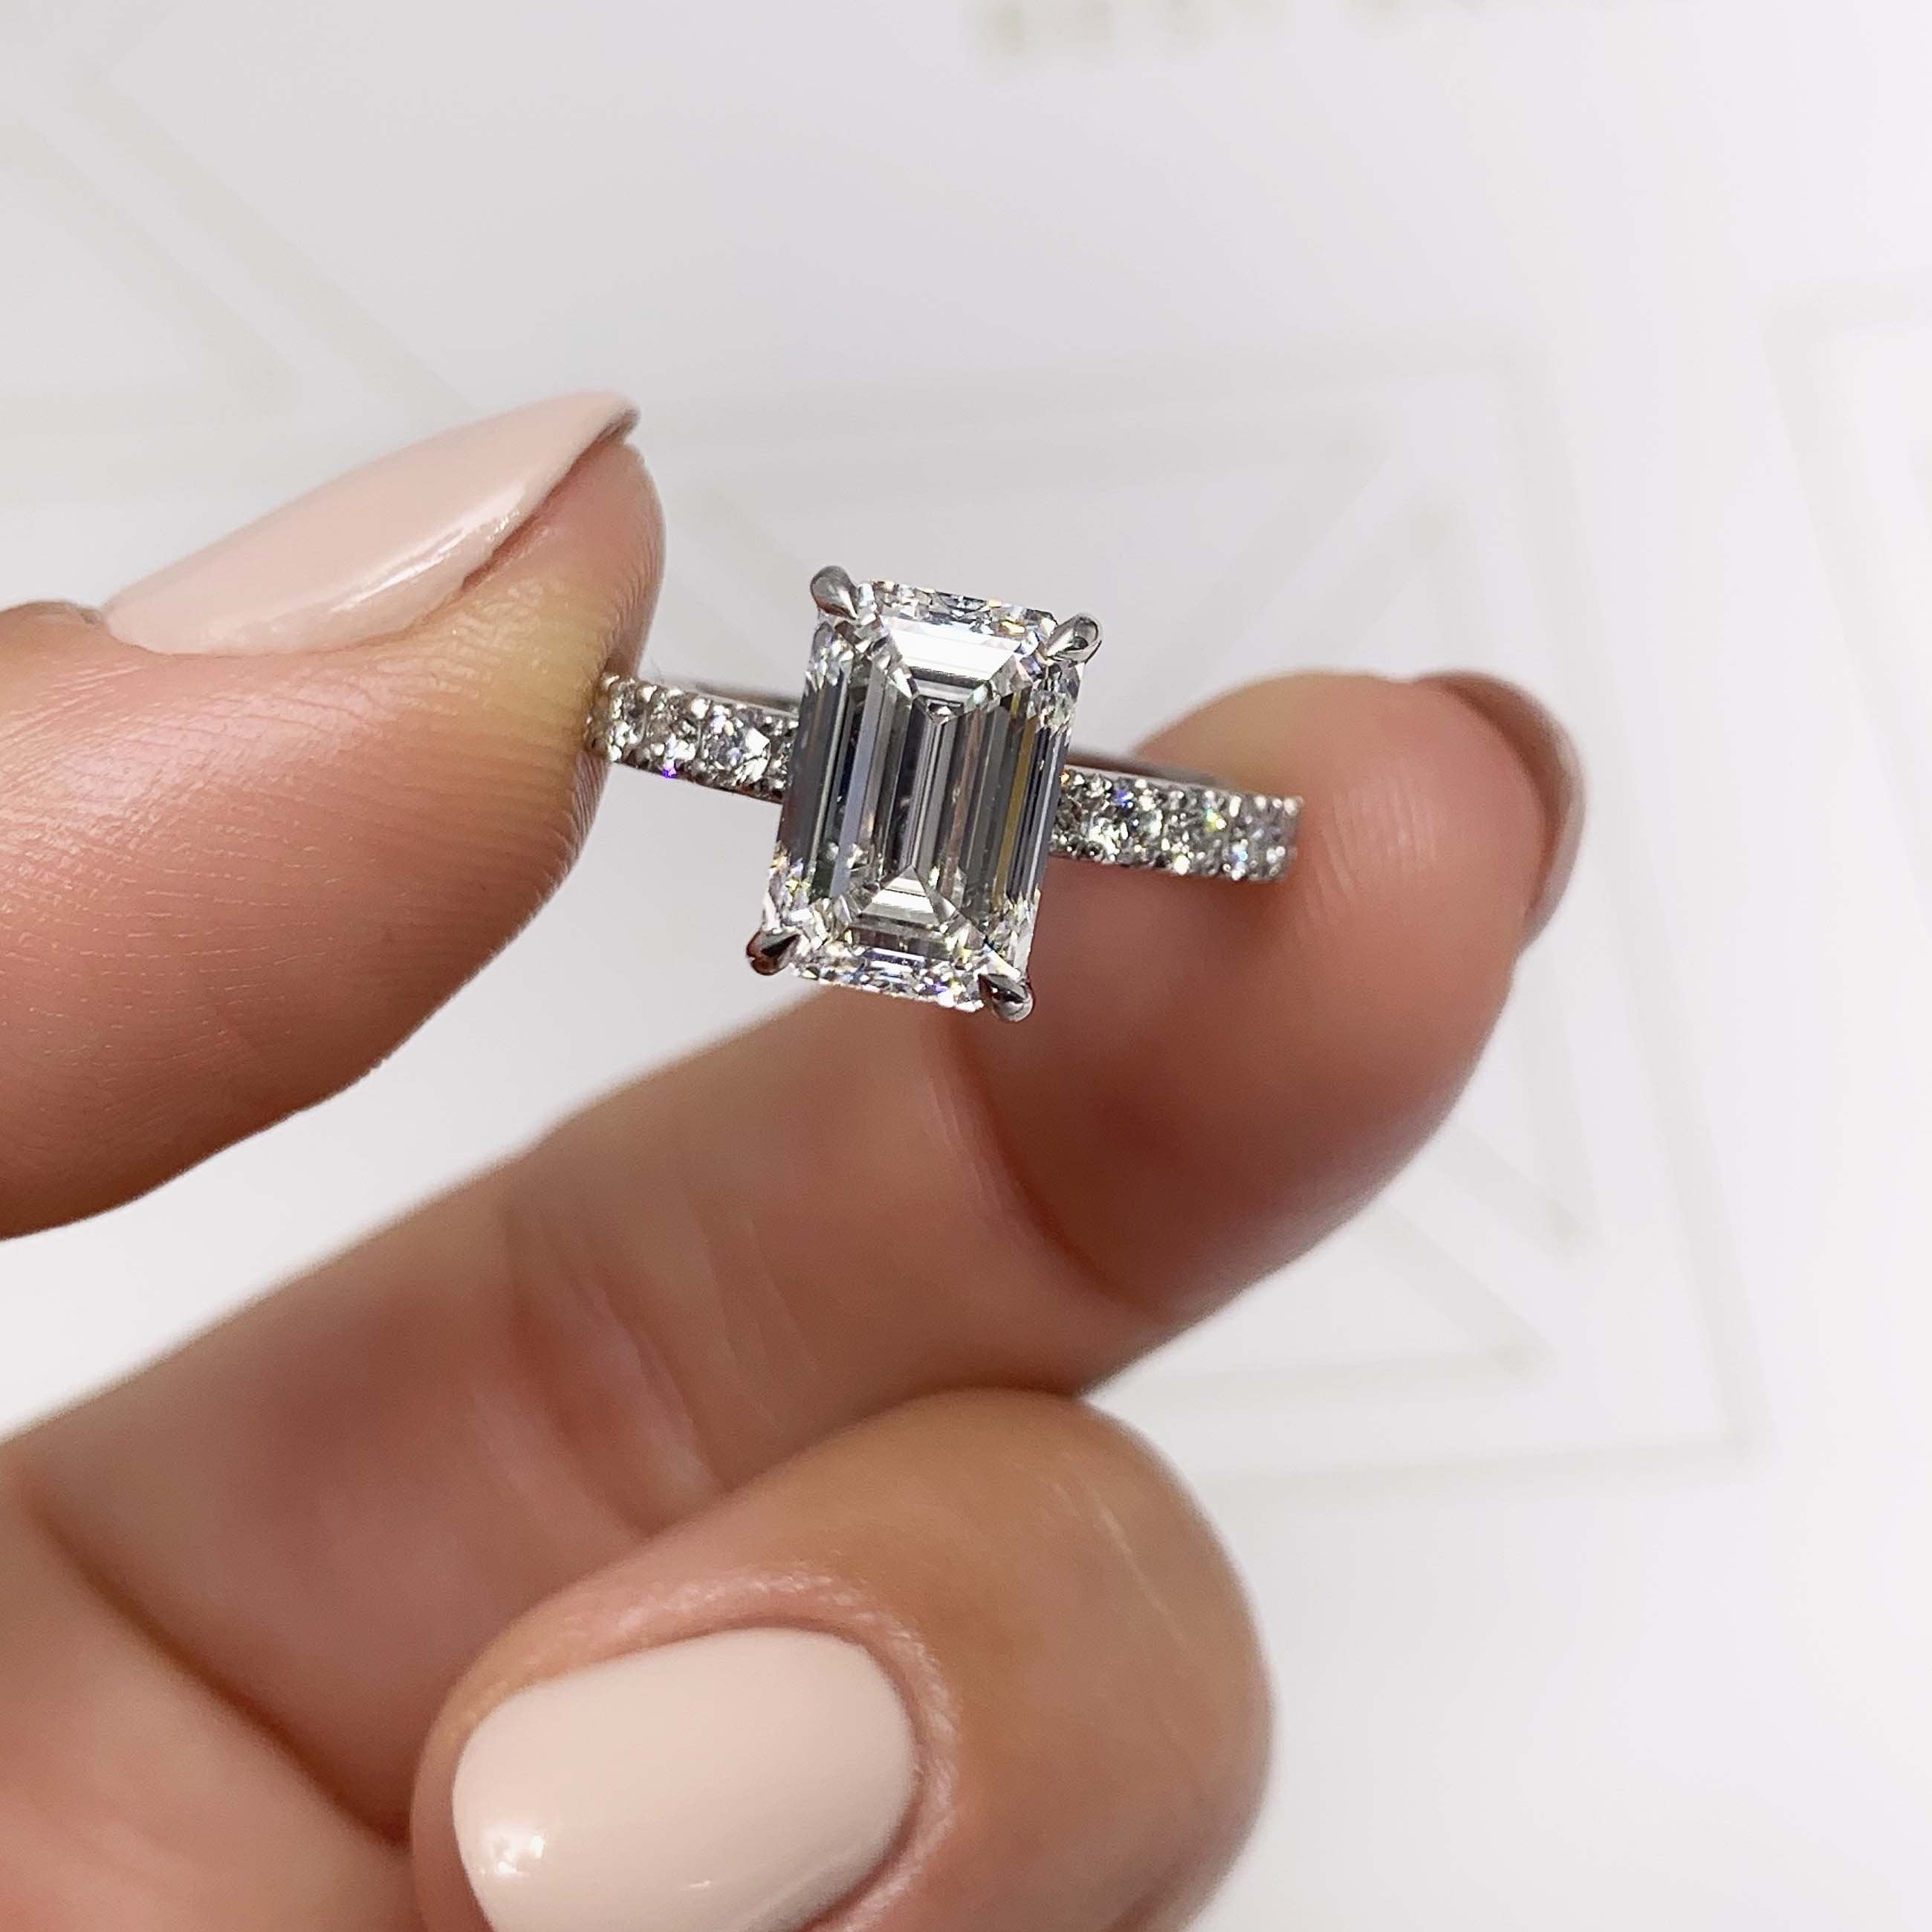 Royal Lab Grown Diamond Ring   (3.5 Carat) -18K White Gold